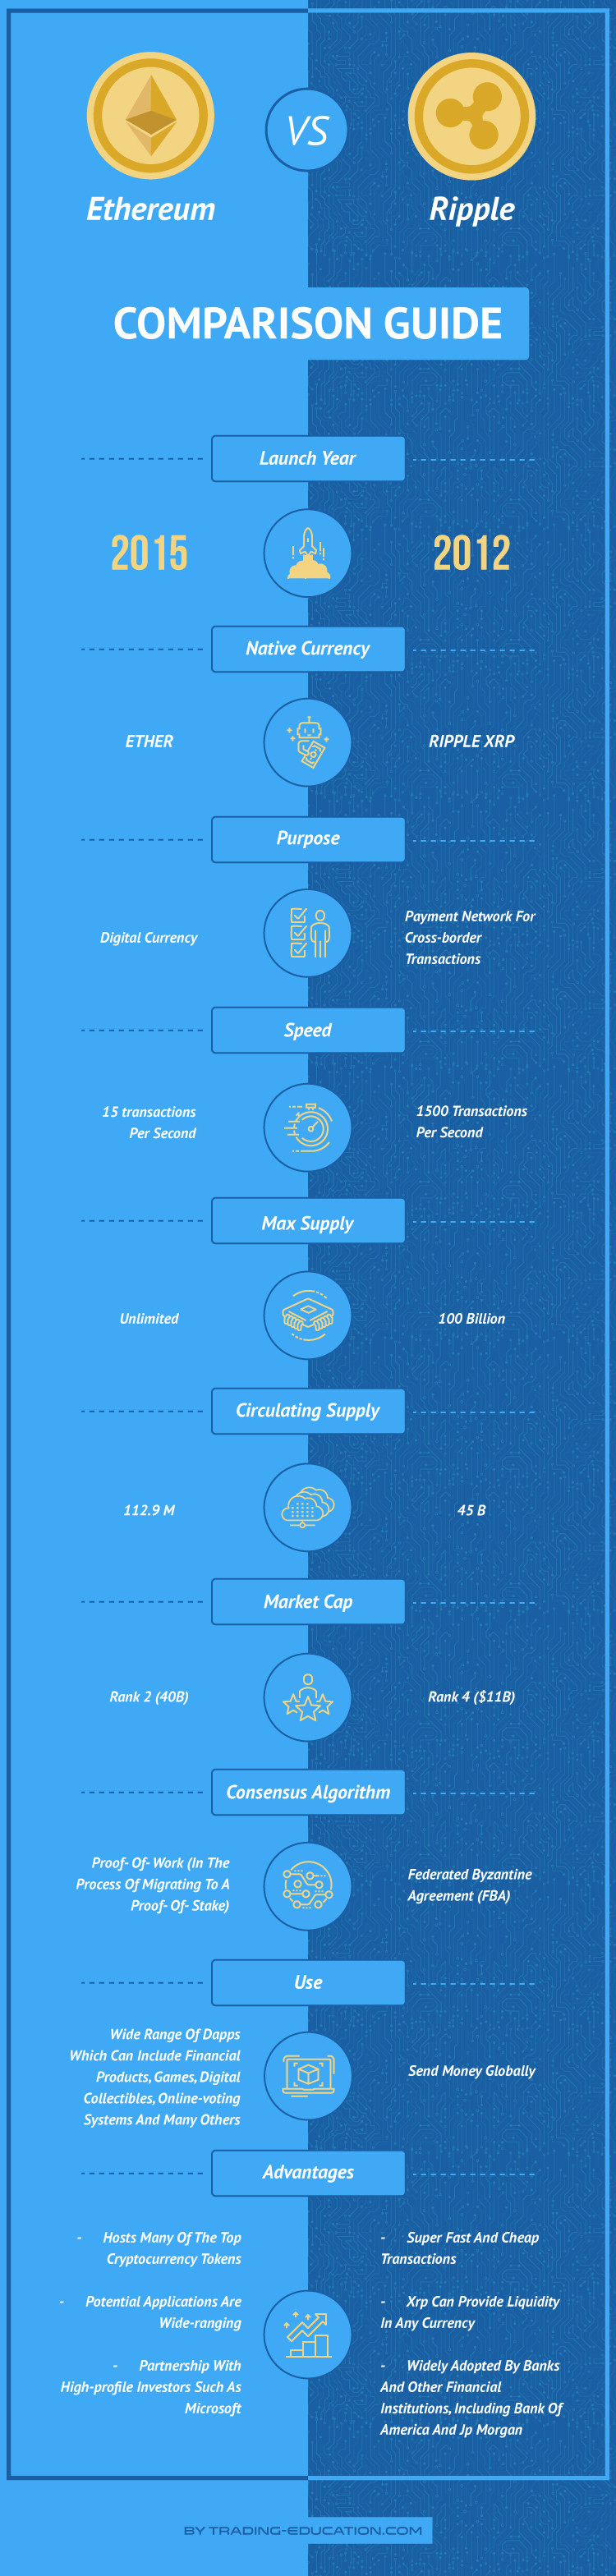 Ethereum versus Ripple infographic